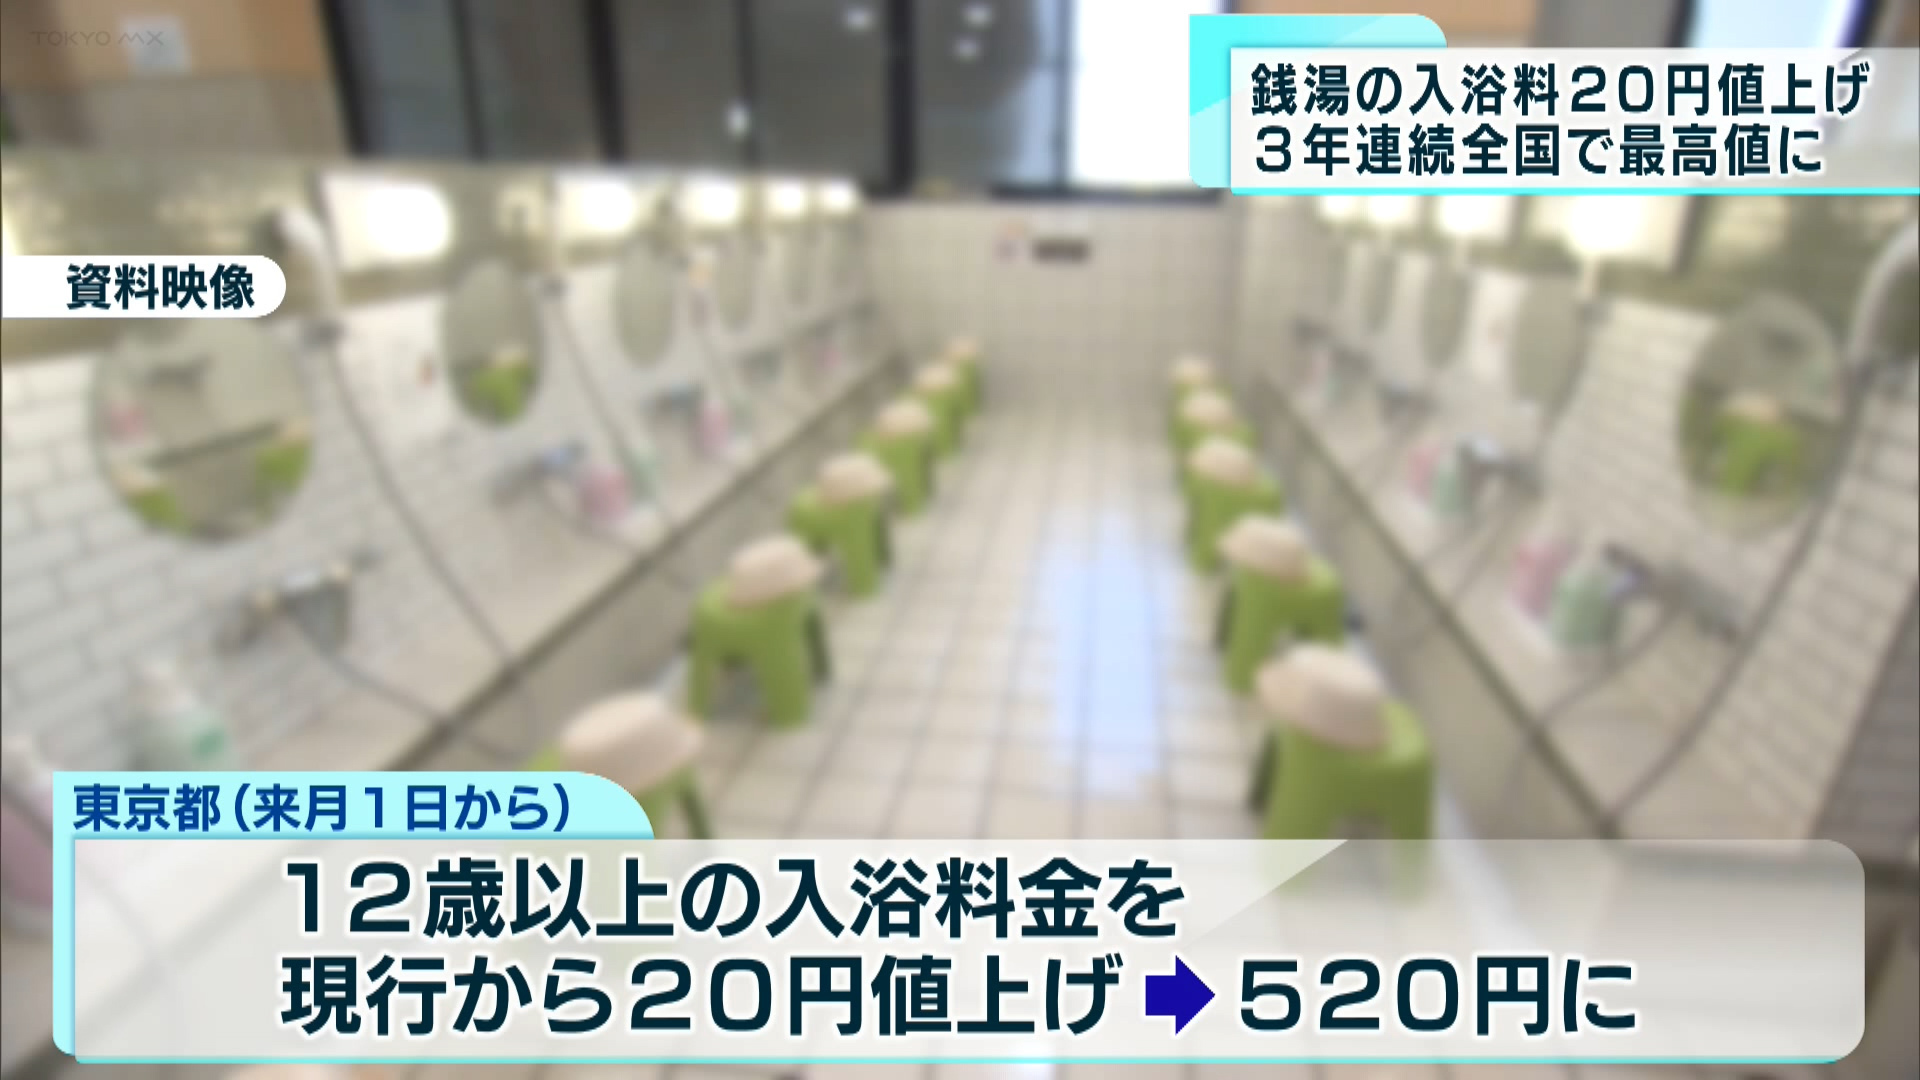 東京都は銭湯の12歳以上の入浴料金について、7月1日から20円値上げし520円にすることを発表しました。去年、おととしに続いて3年連続の値上げです。
